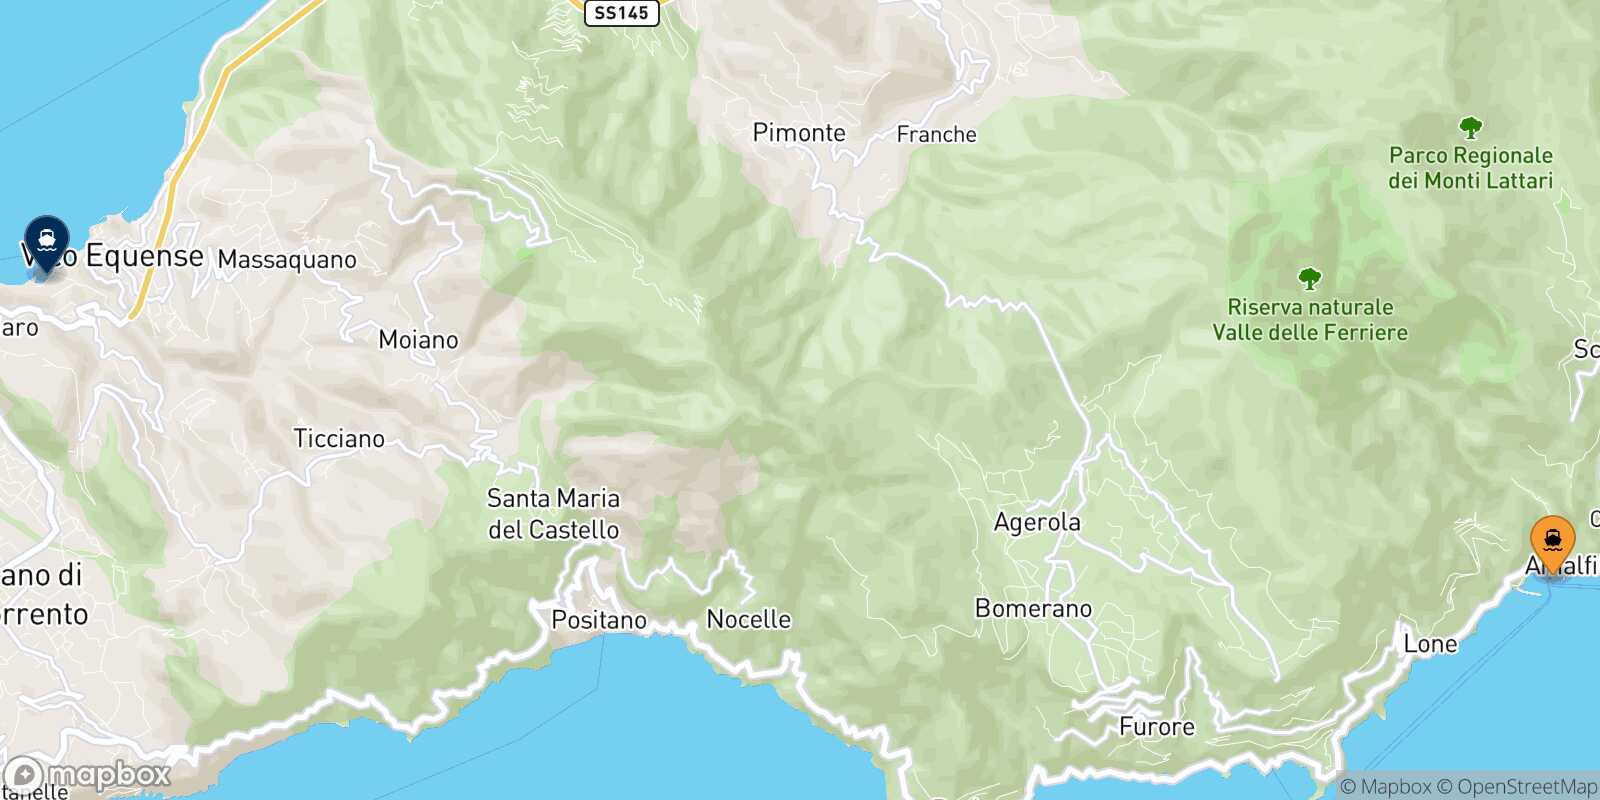 Amalfi Seiano route map